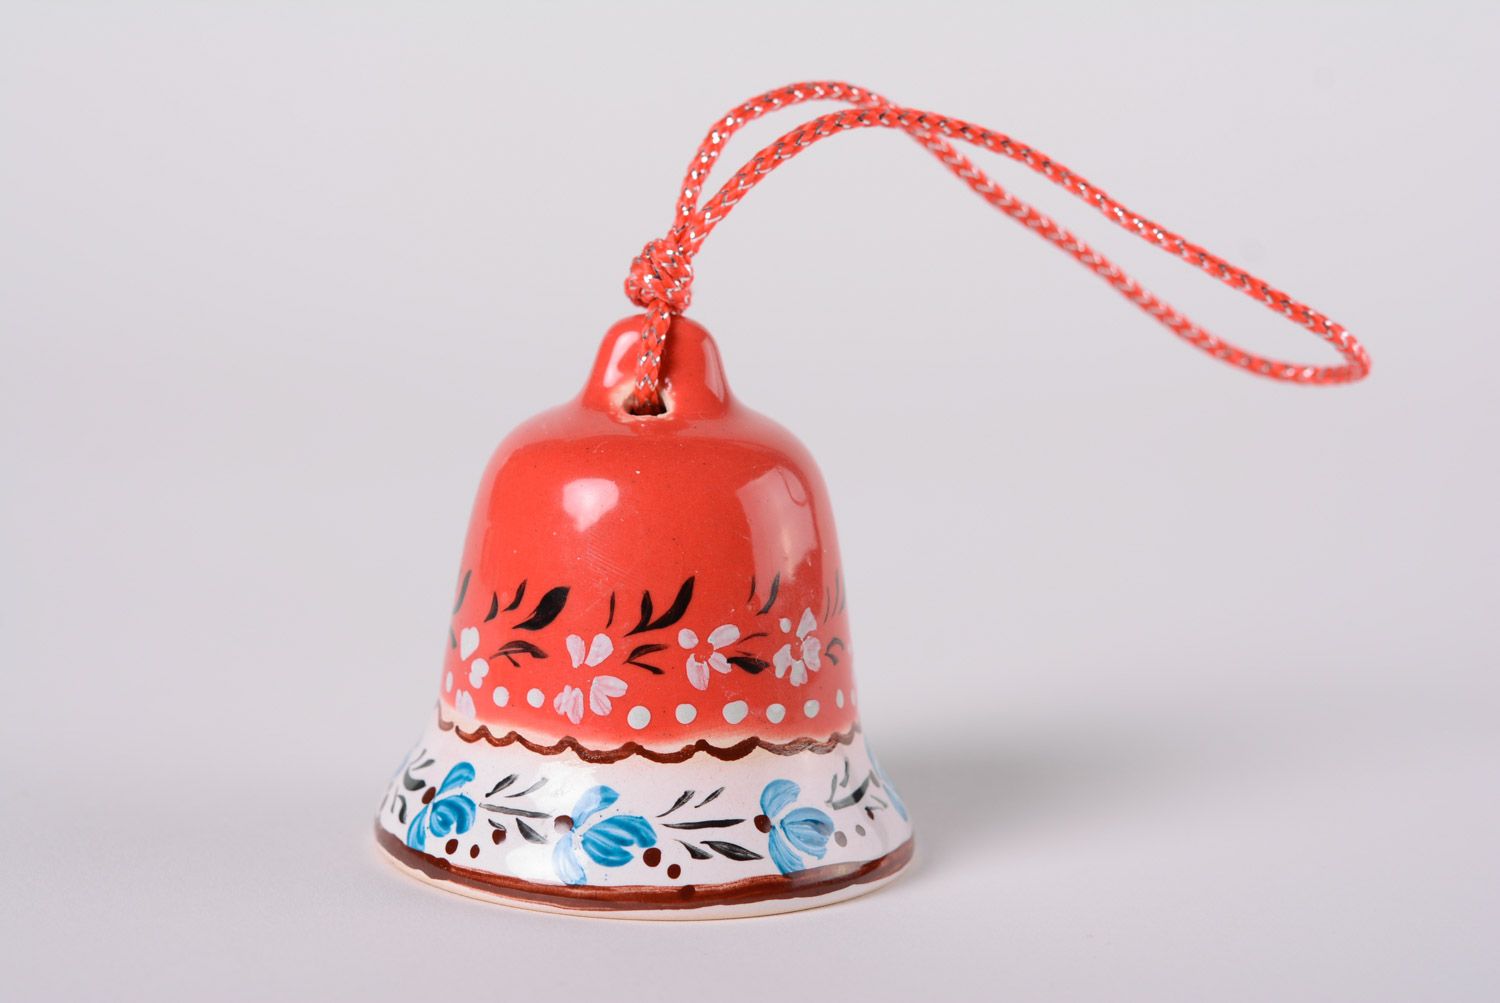 Petite clochette décorative rouge peinte faite main céramique majolique glaçure photo 1